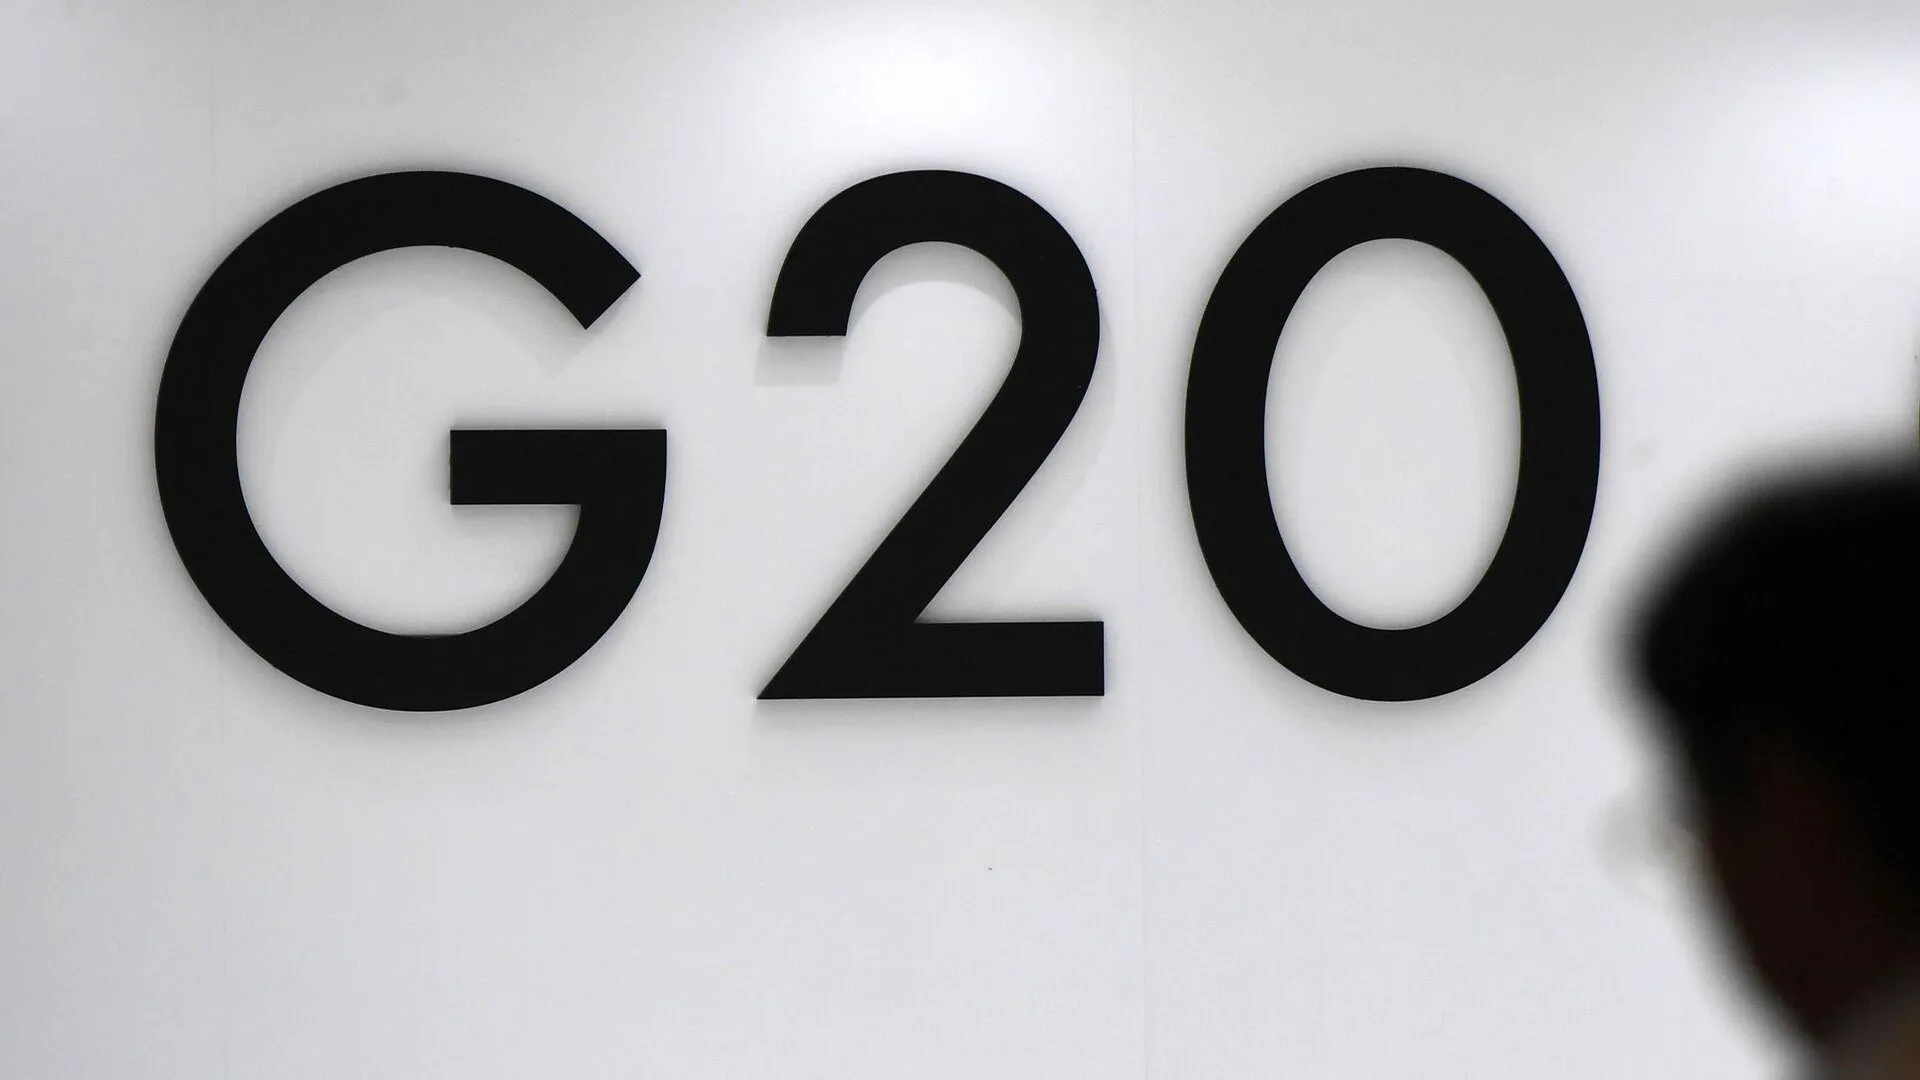 Путин изложит позицию России по «неспокойной ситуации» на онлайн-саммите G20